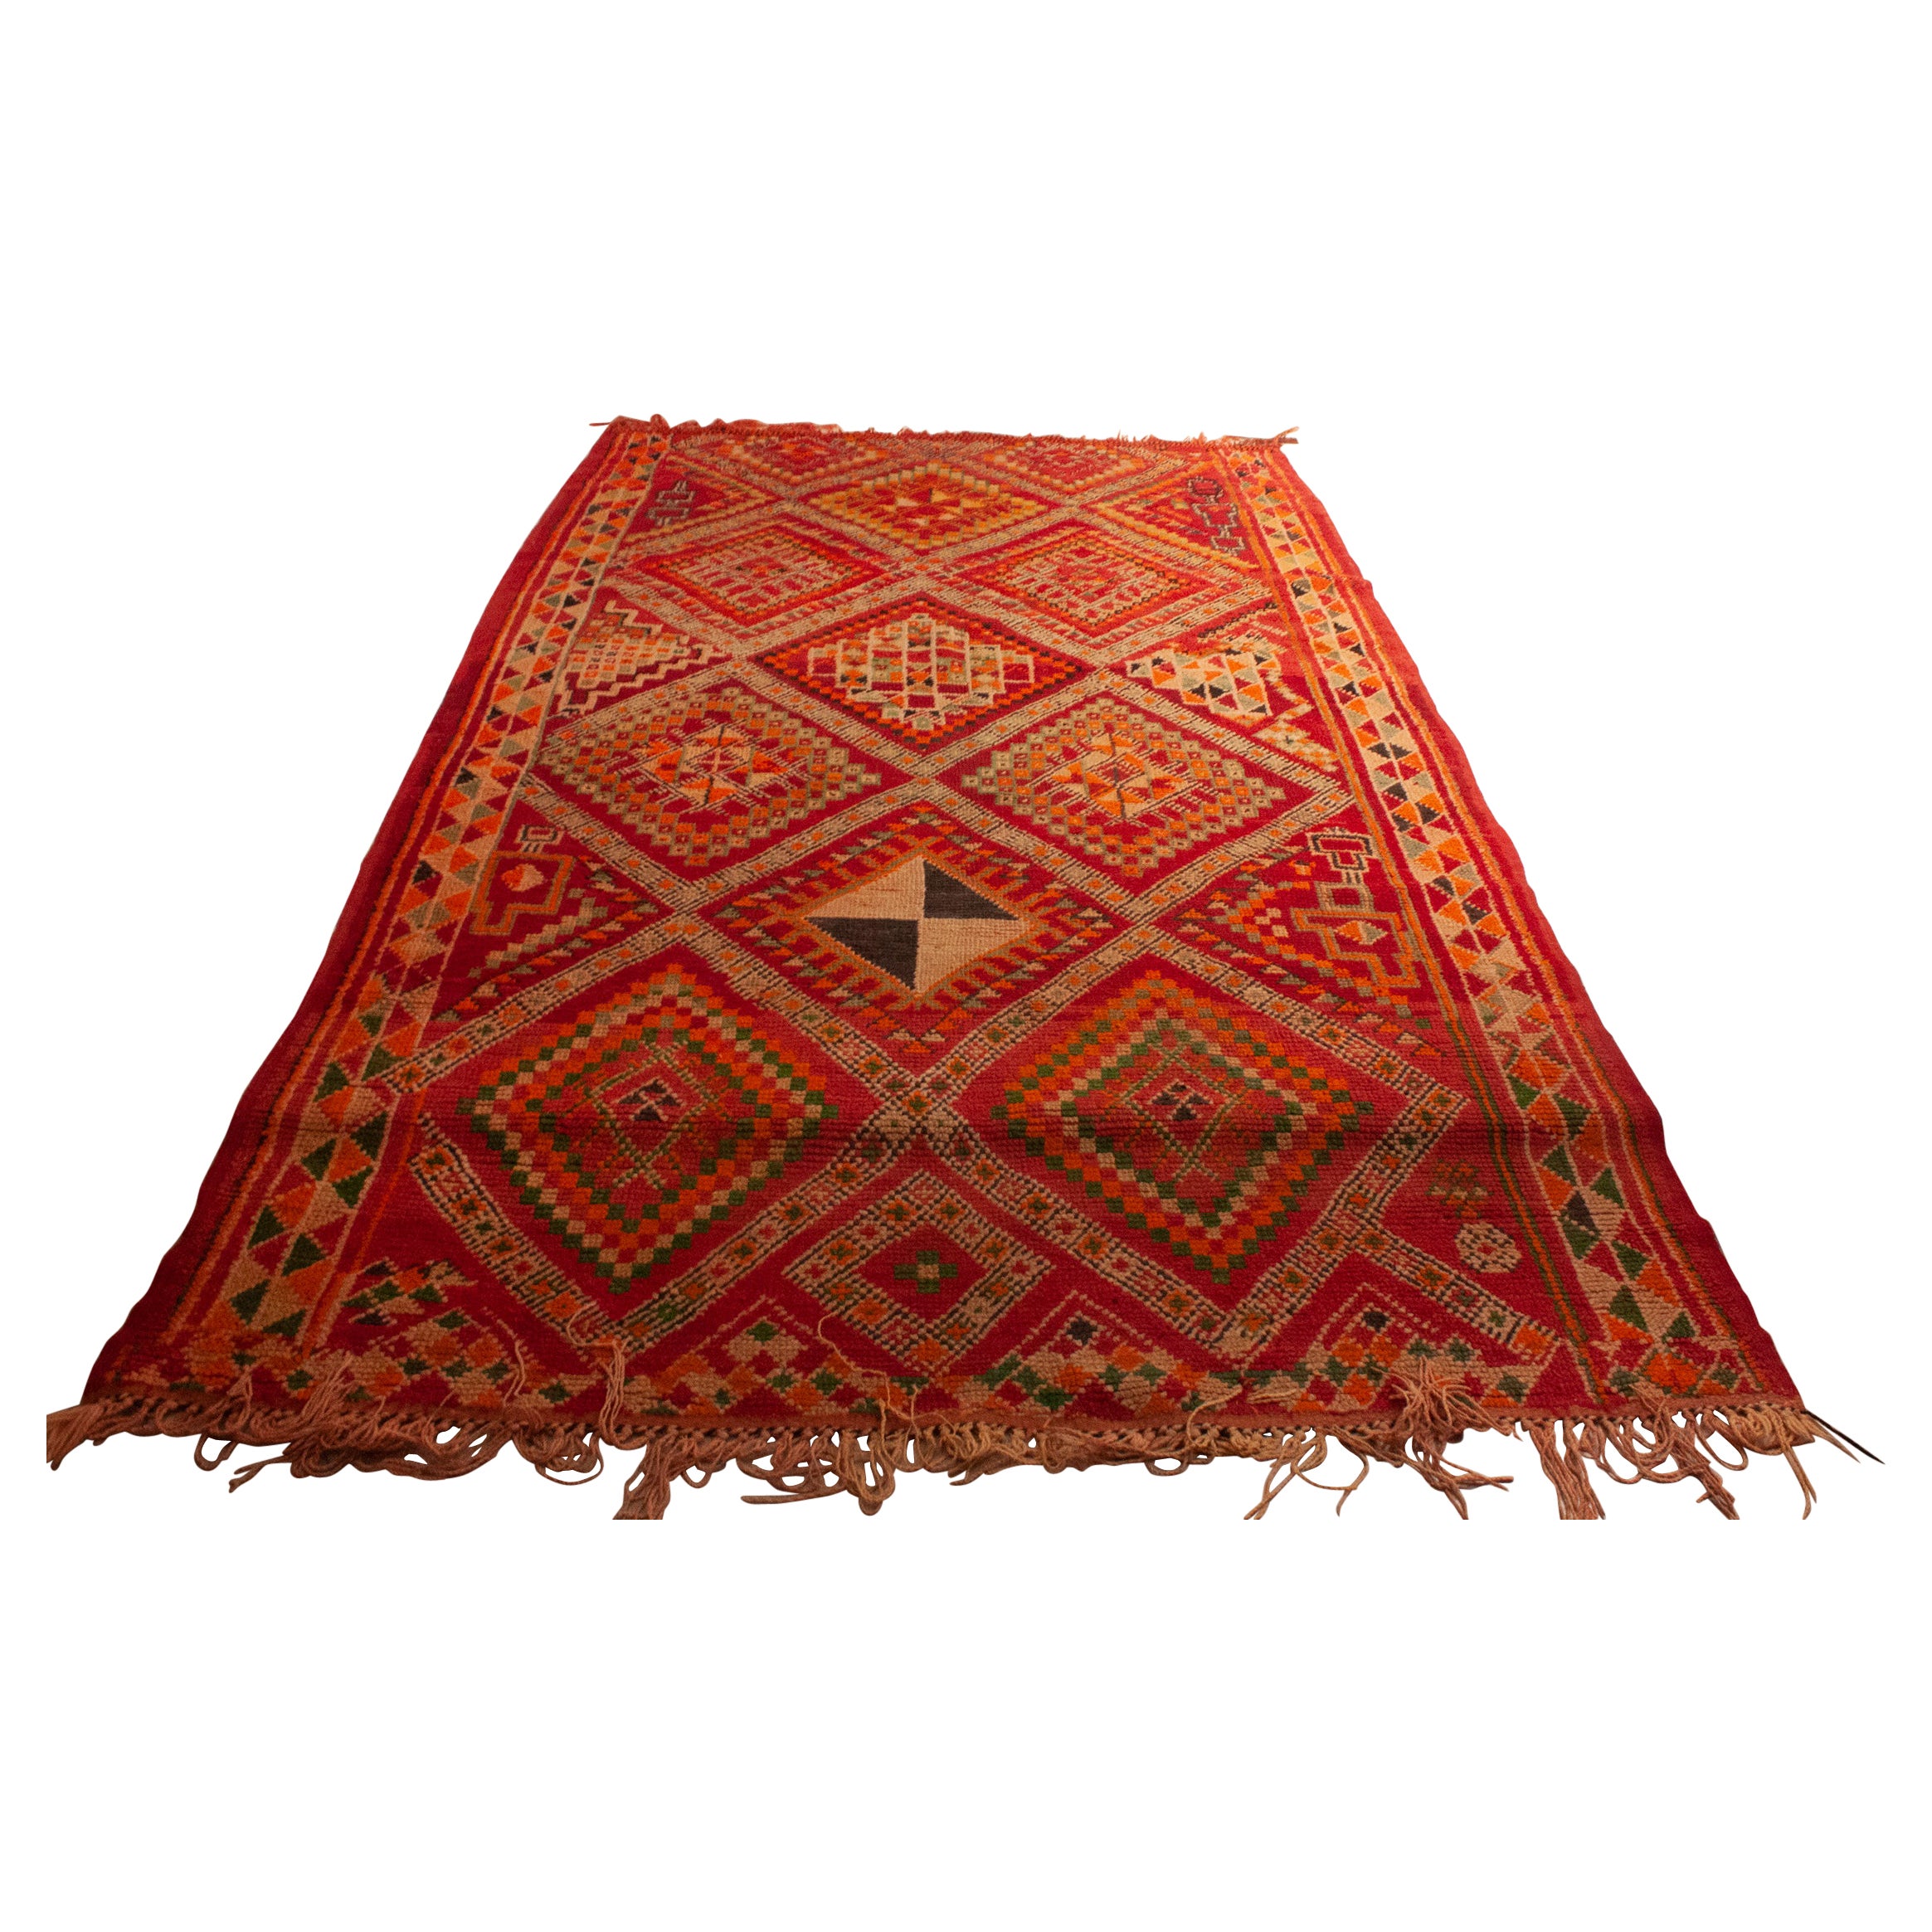 Bunter marokkanischer Teppich im Vintage-Stil